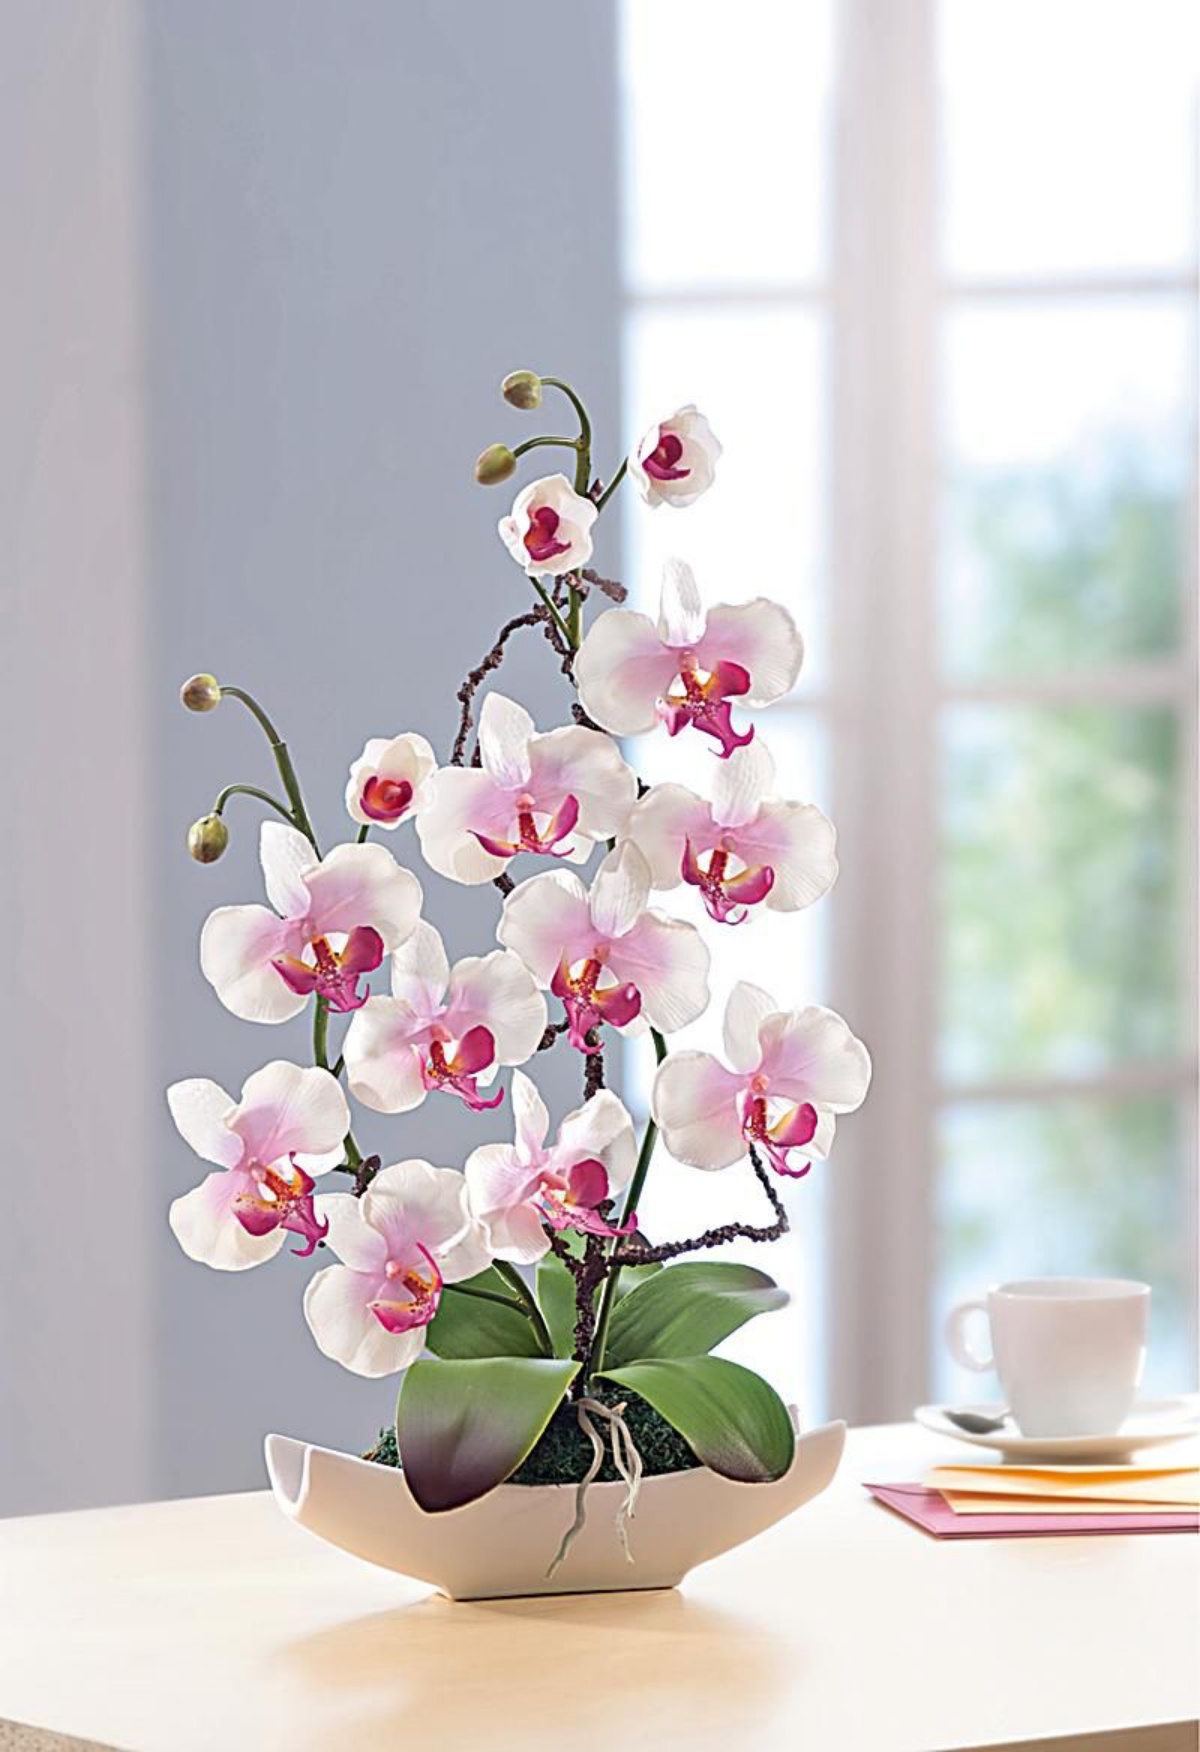 tavolo da pranzo con pianta da appartamento orchidea dai fiori bianchi